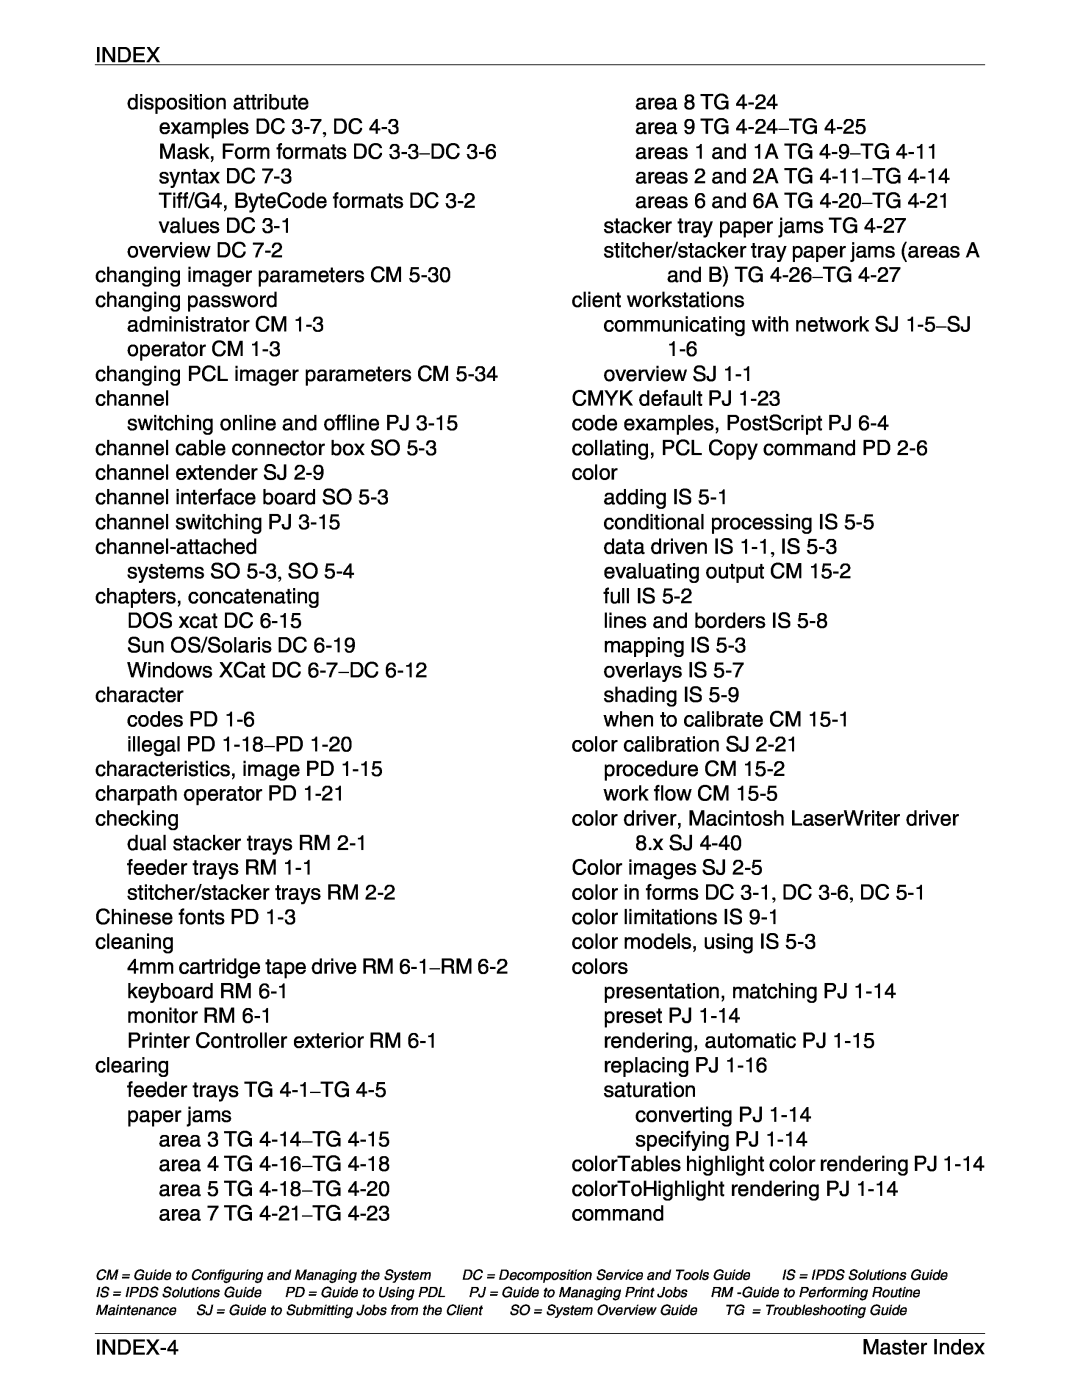 Xerox 4050/4090 NPS/NPS manual Index 